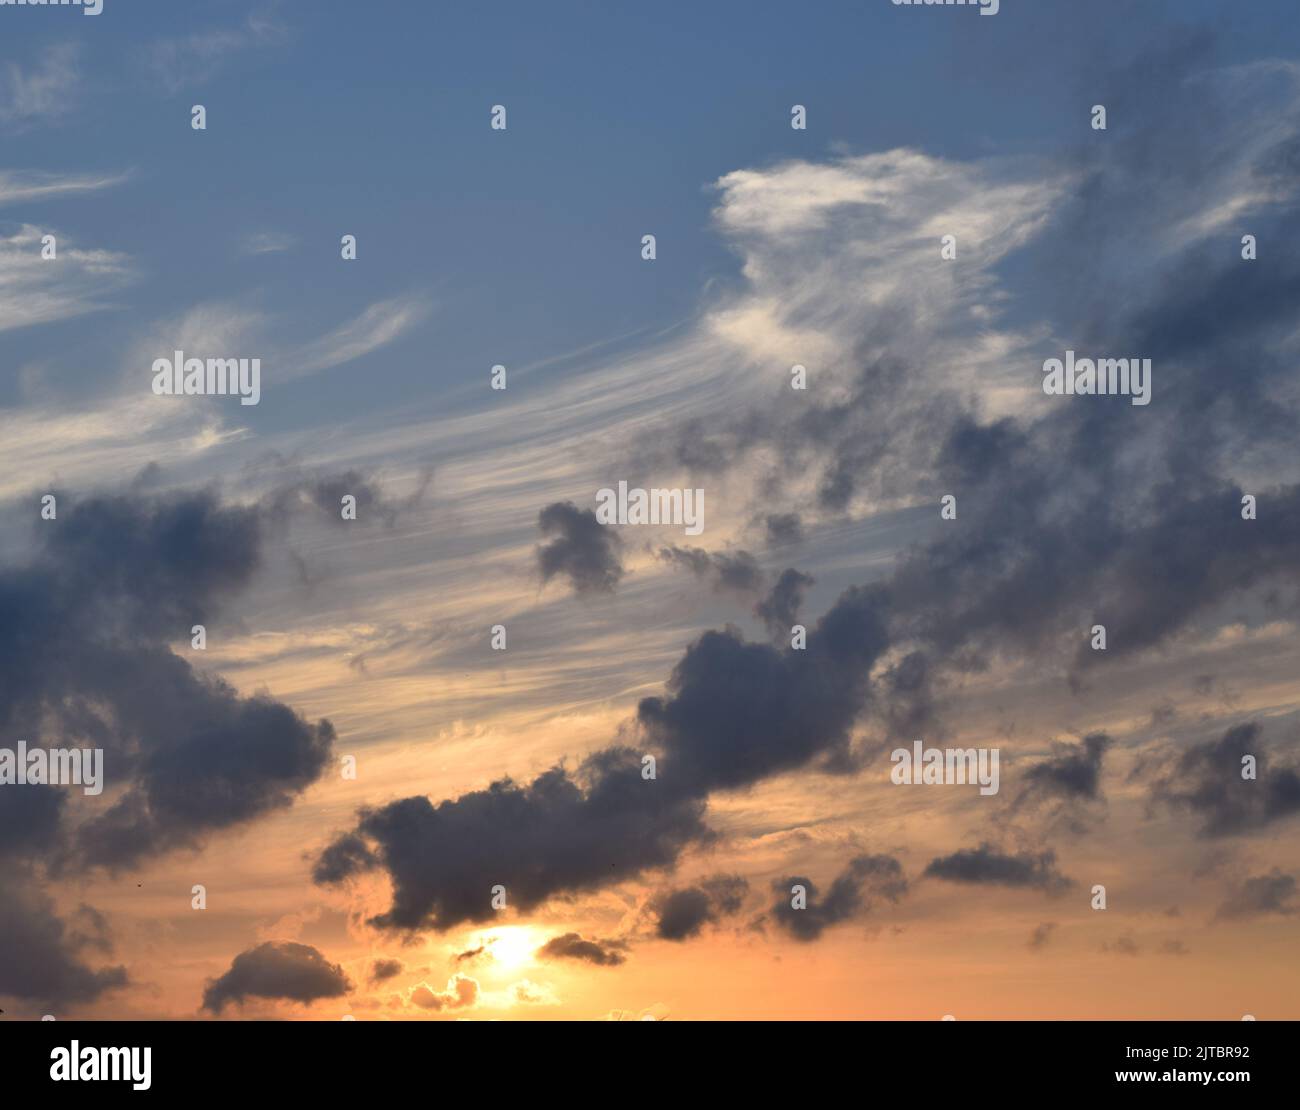 Diese schönen Fotos wurden in der Luft von verschiedenen Sonnenuntergängen und den Wolken am Himmel aufgenommen. Ich bin ein Natur- und Himmelsliebhaber, der gerne fotografiert. Stockfoto